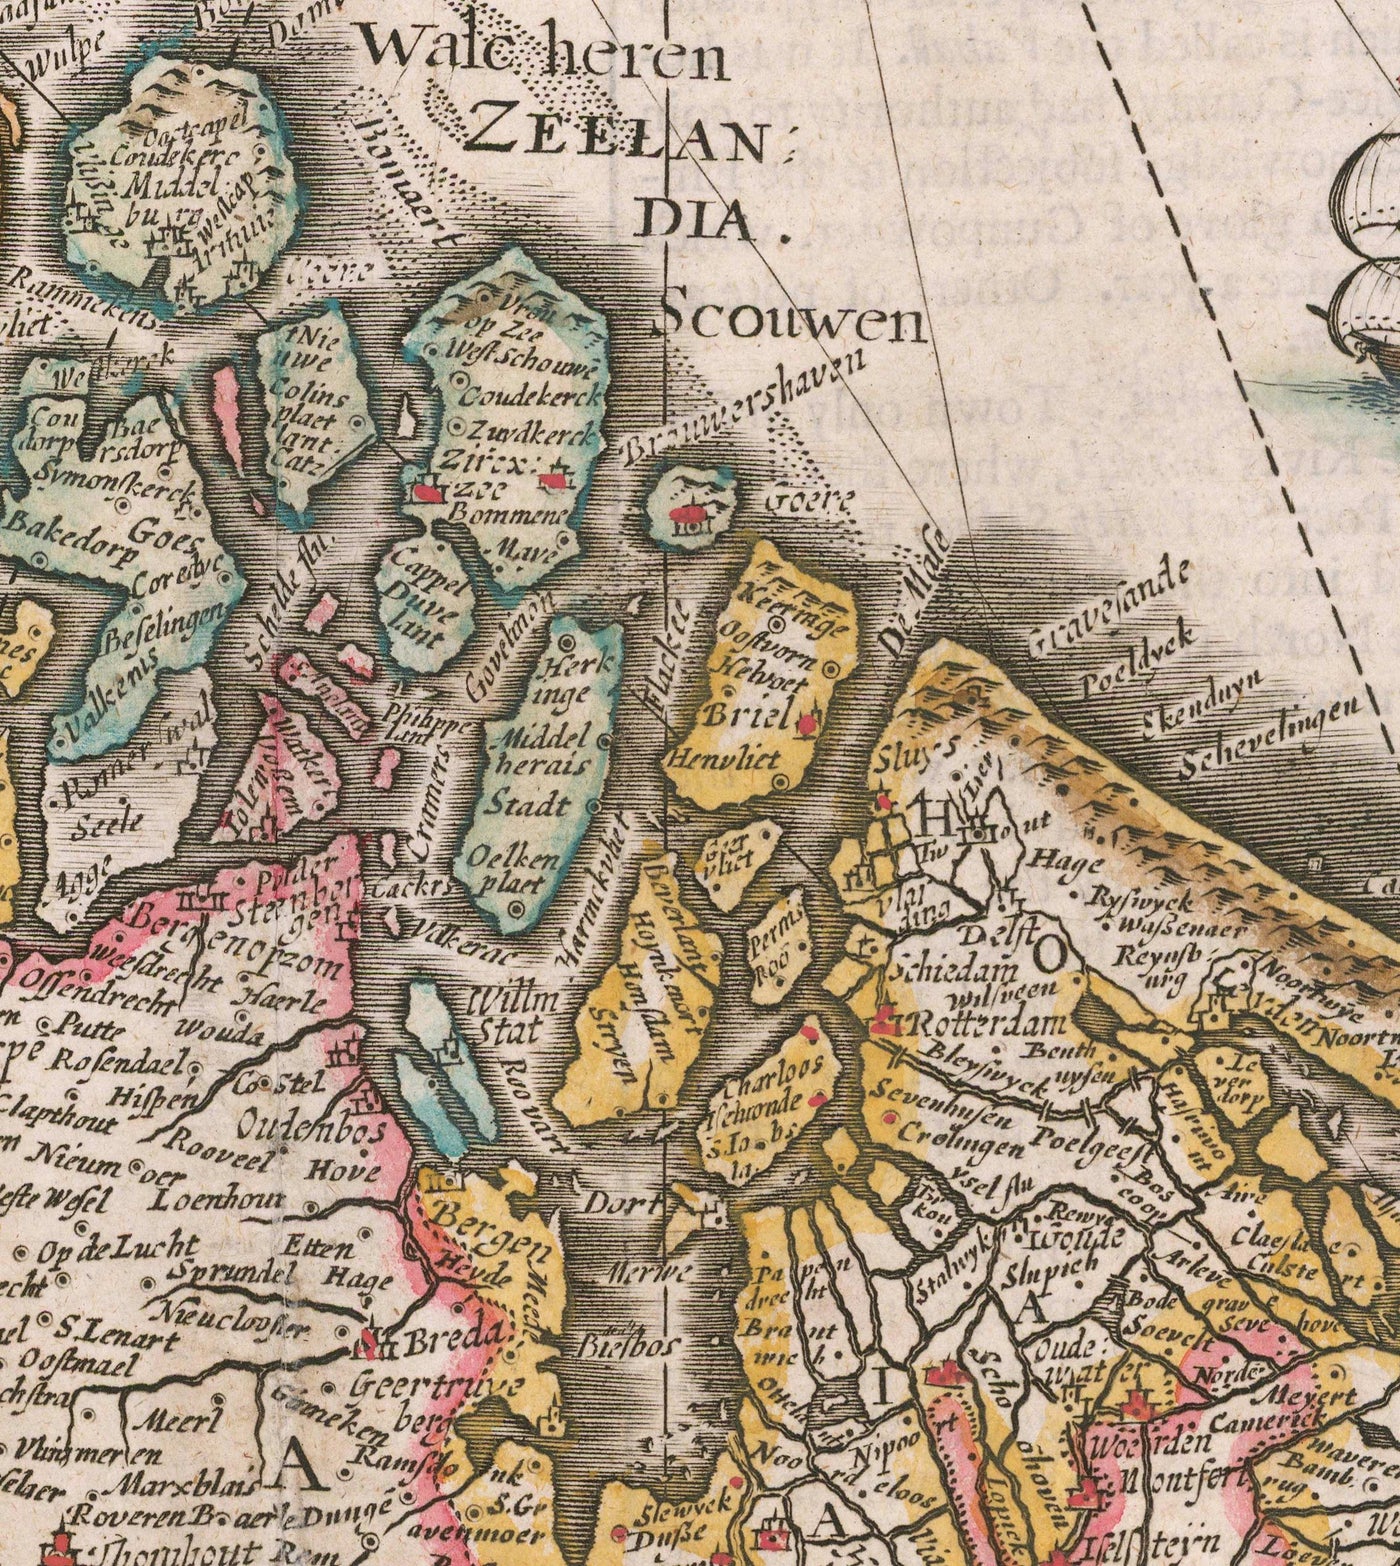 Mapa antiguo de los países bajos por John Speed, 1627 - Países bajos, Países Bajos, Bélgica, Luxemburgo, Flandes, Belgica